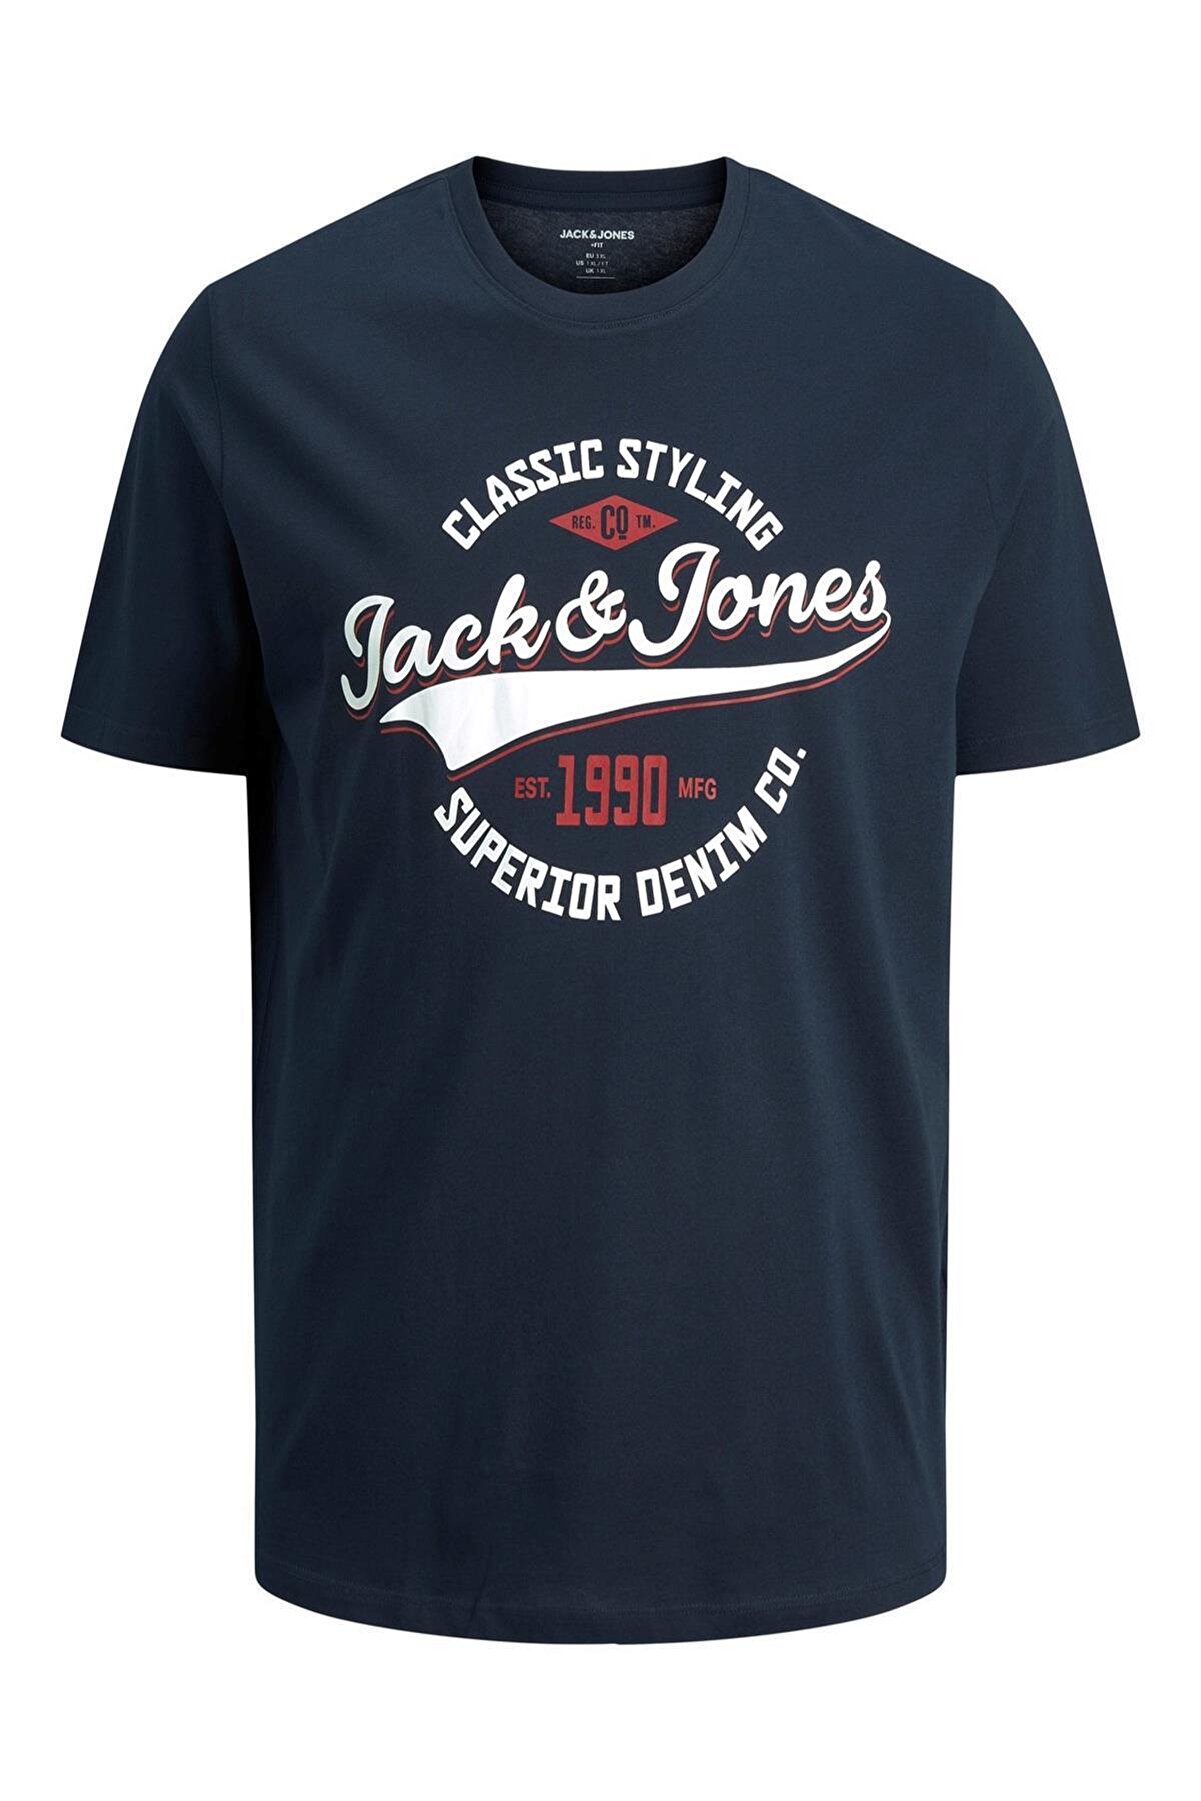 Jack & Jones Jack&jones 12193090 Trademark Jack&jones Yazı 0 Yaka K.kol T